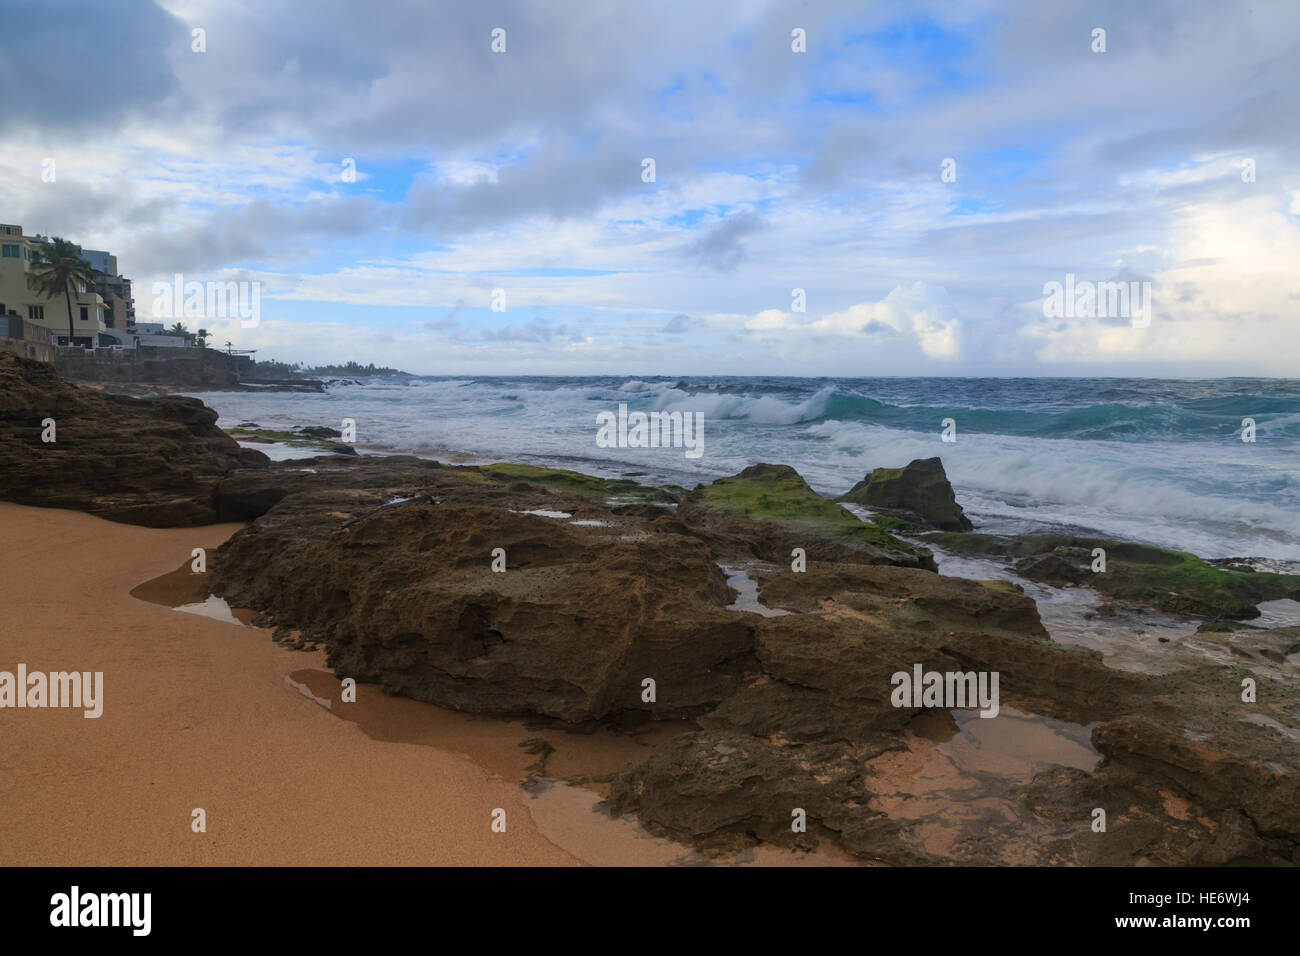 Beach landscape near condado area of San Juan, Puerto Rico. Stock Photo